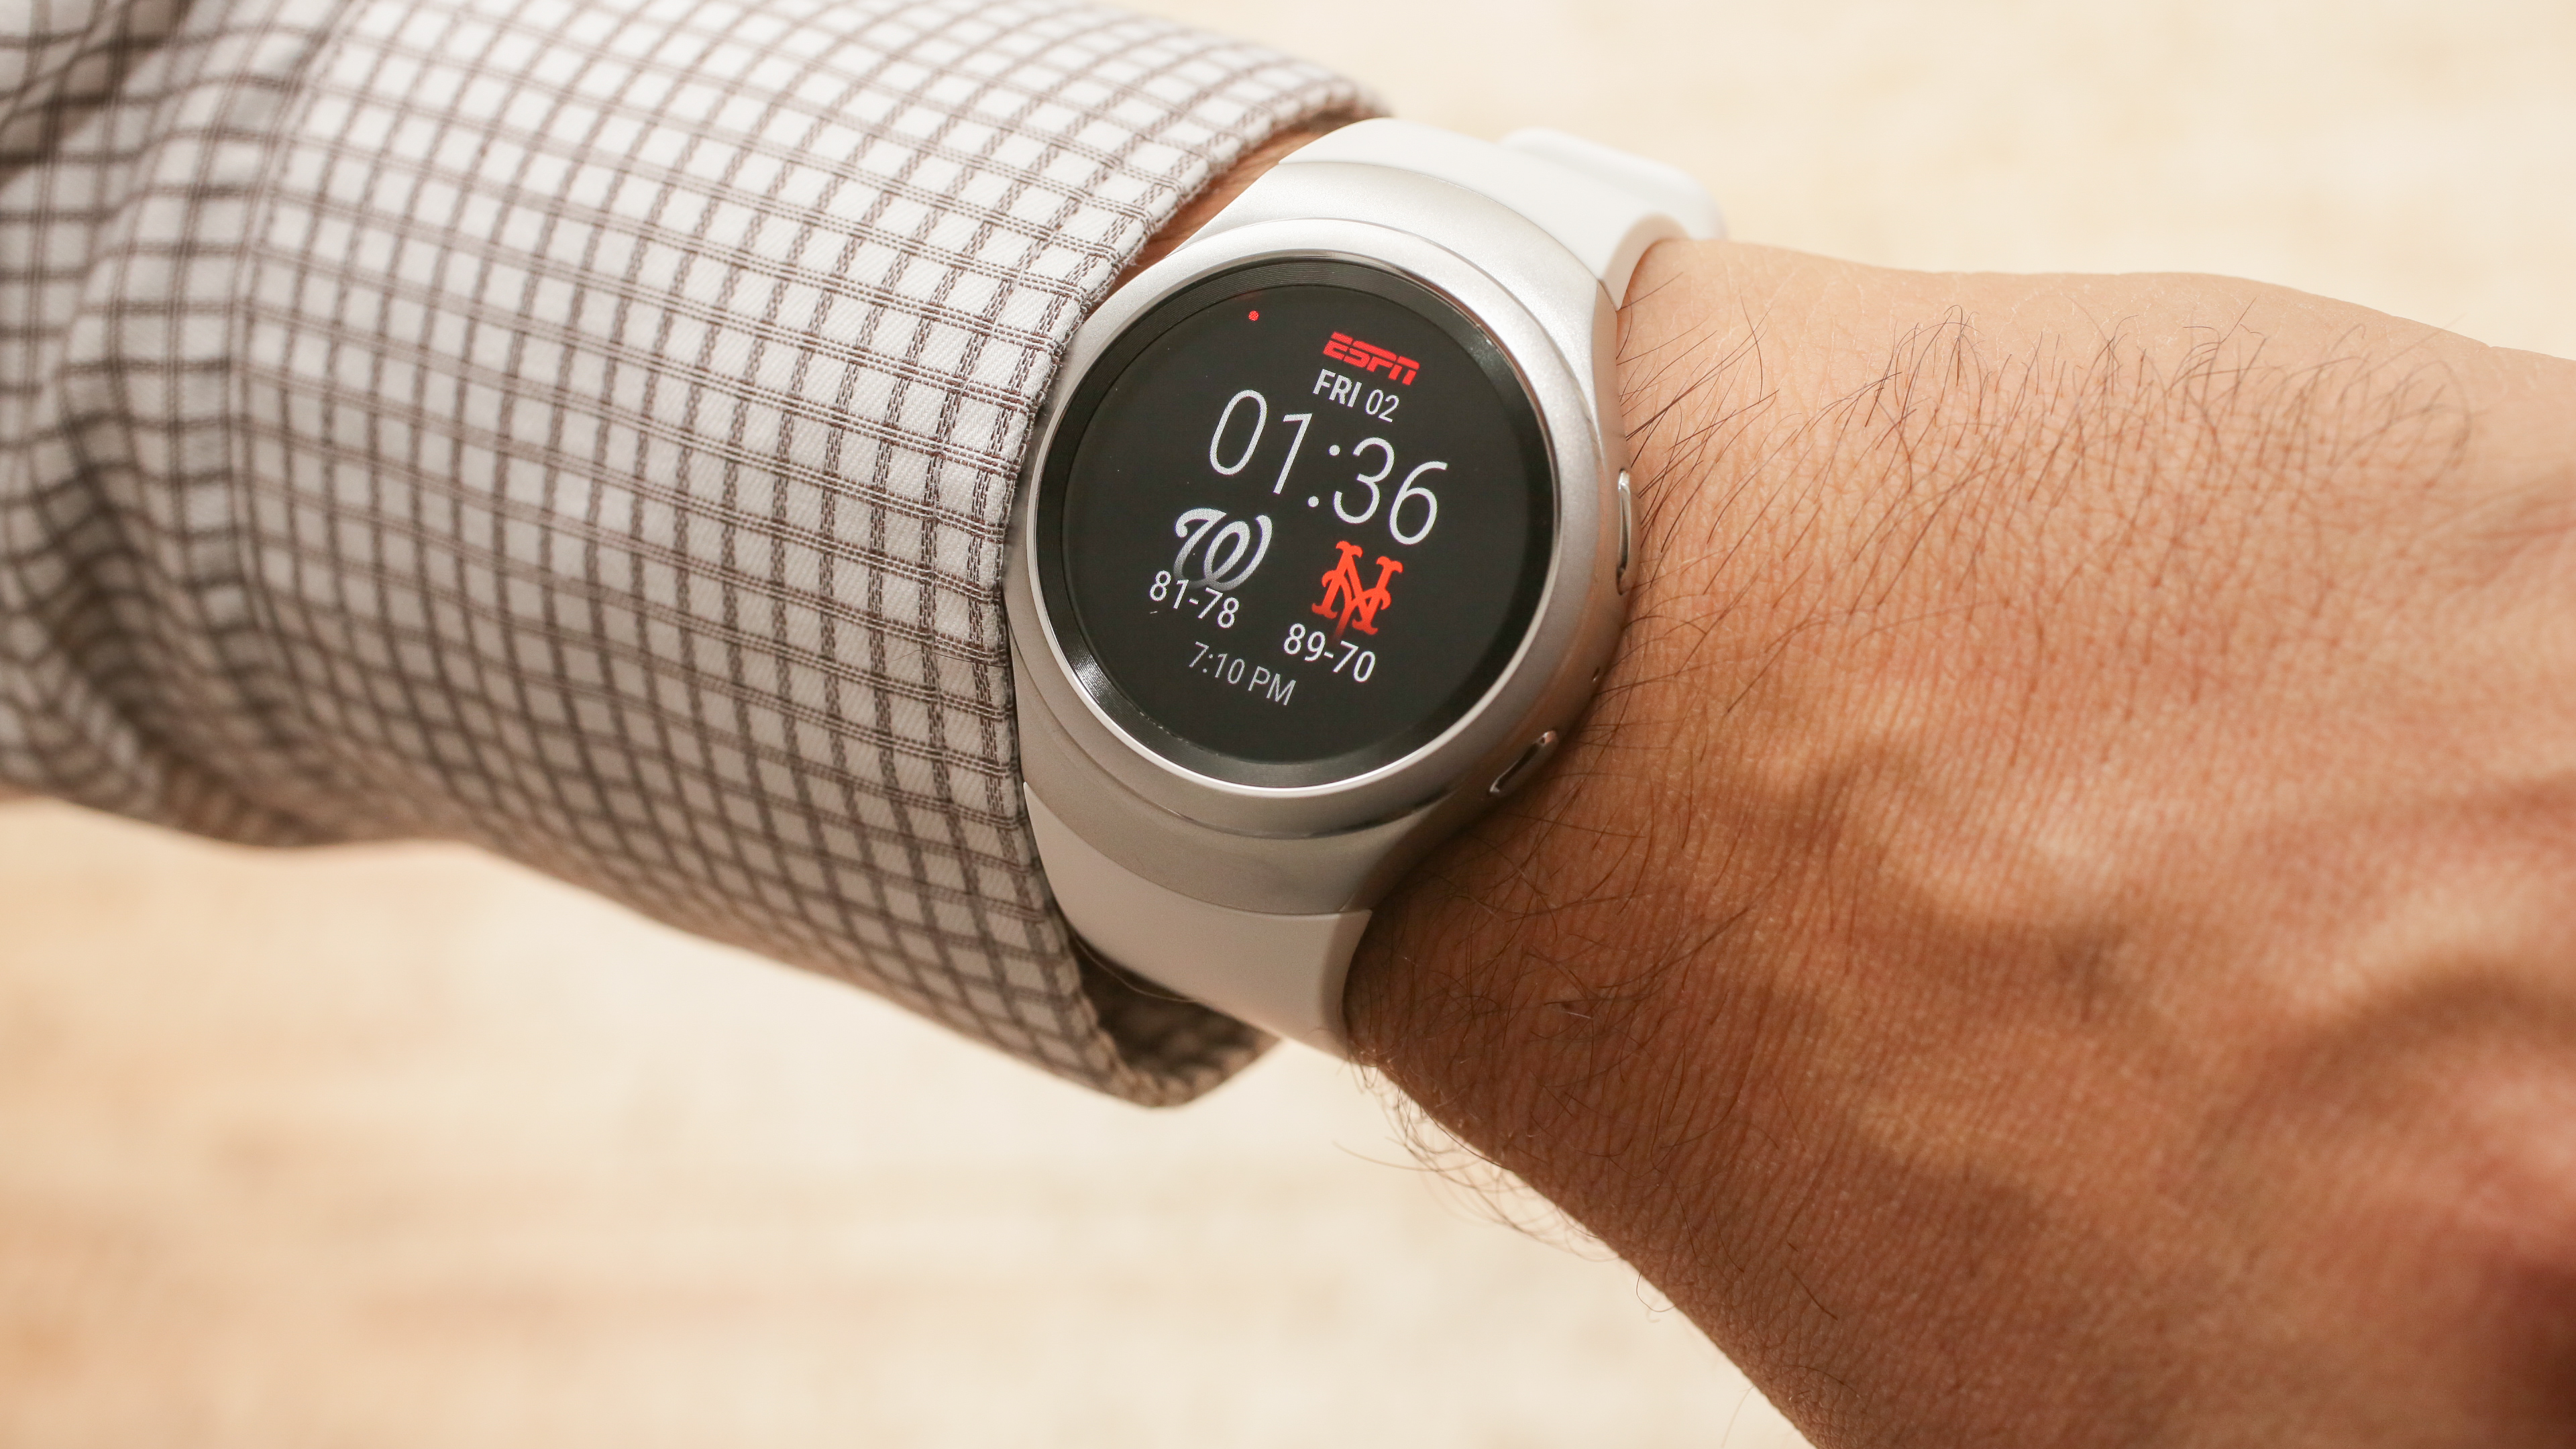 Измерение давление часами самсунг. Часы с давлением. Gear s3 датчик давления. Samsung watch 5 watch face Electric Meter. Картинки на часы самсунг вотч.